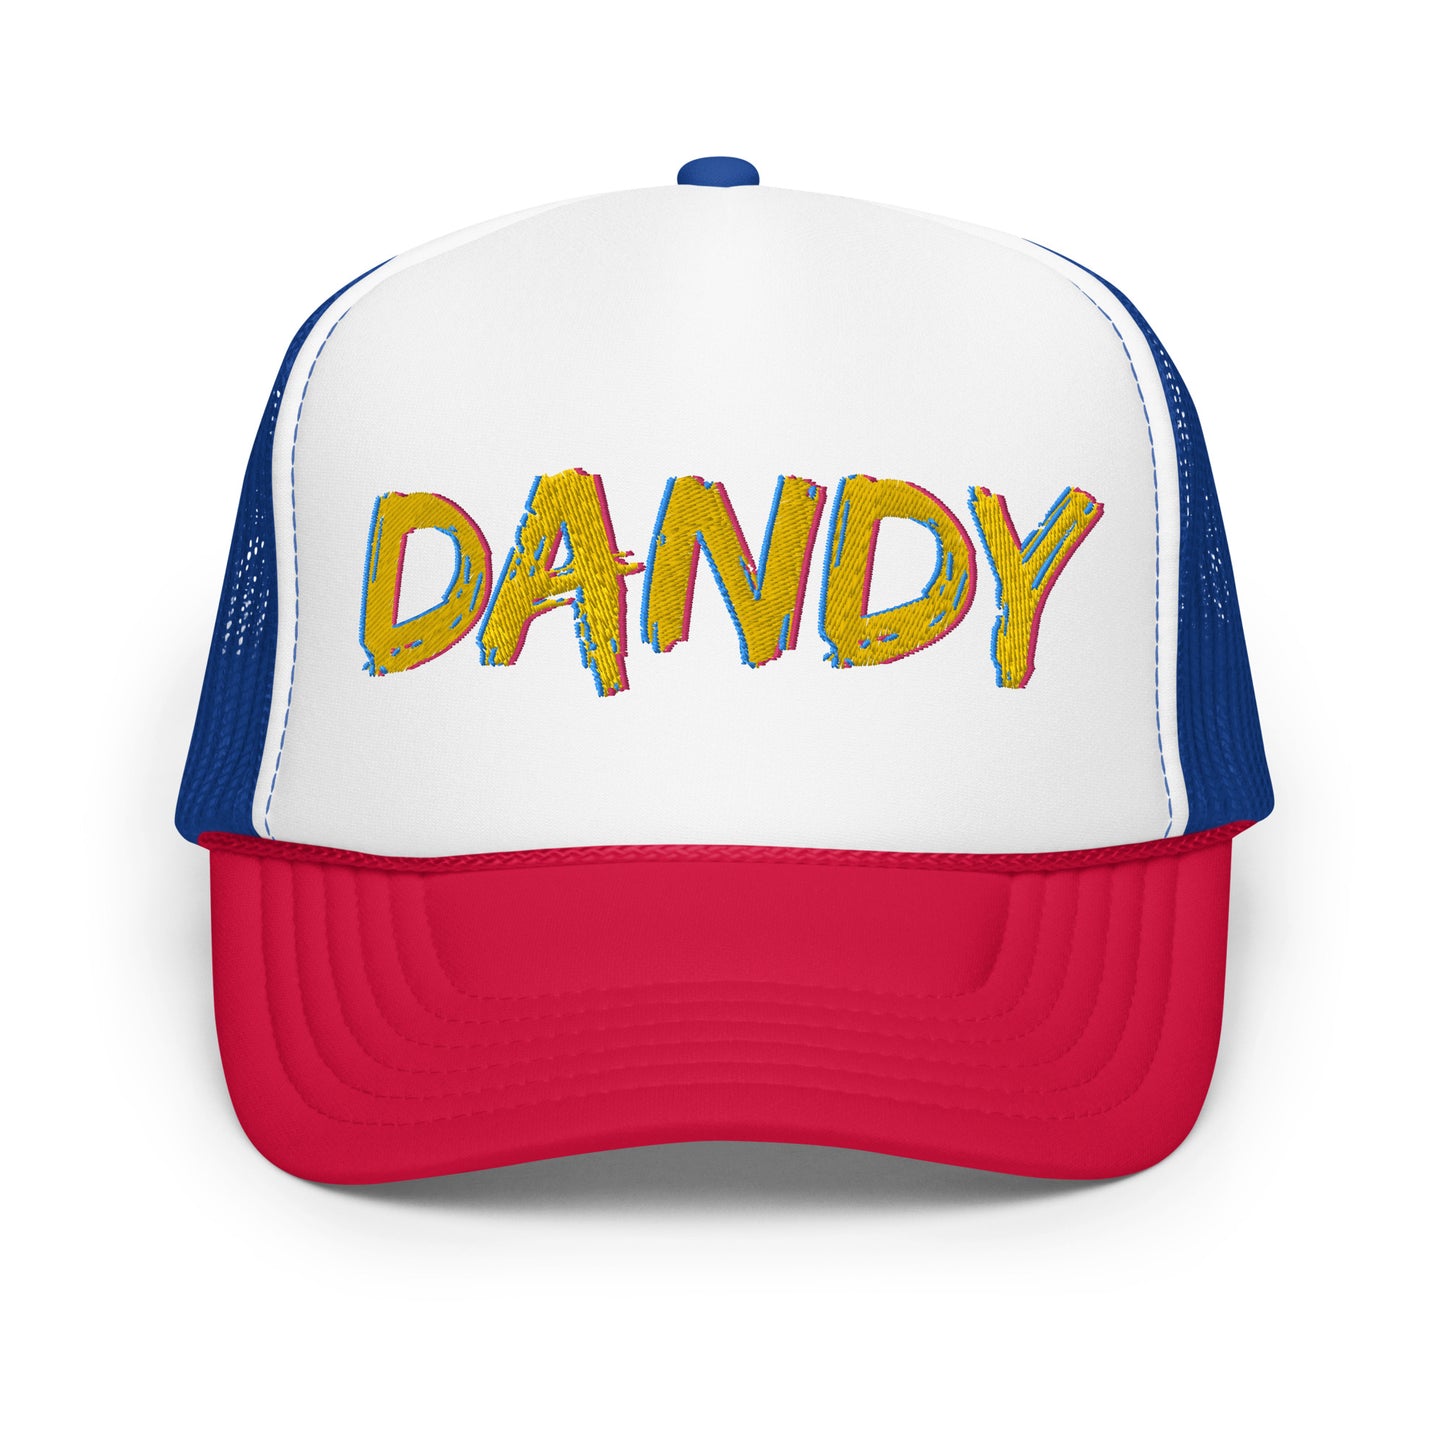 Dandy Foam trucker hat